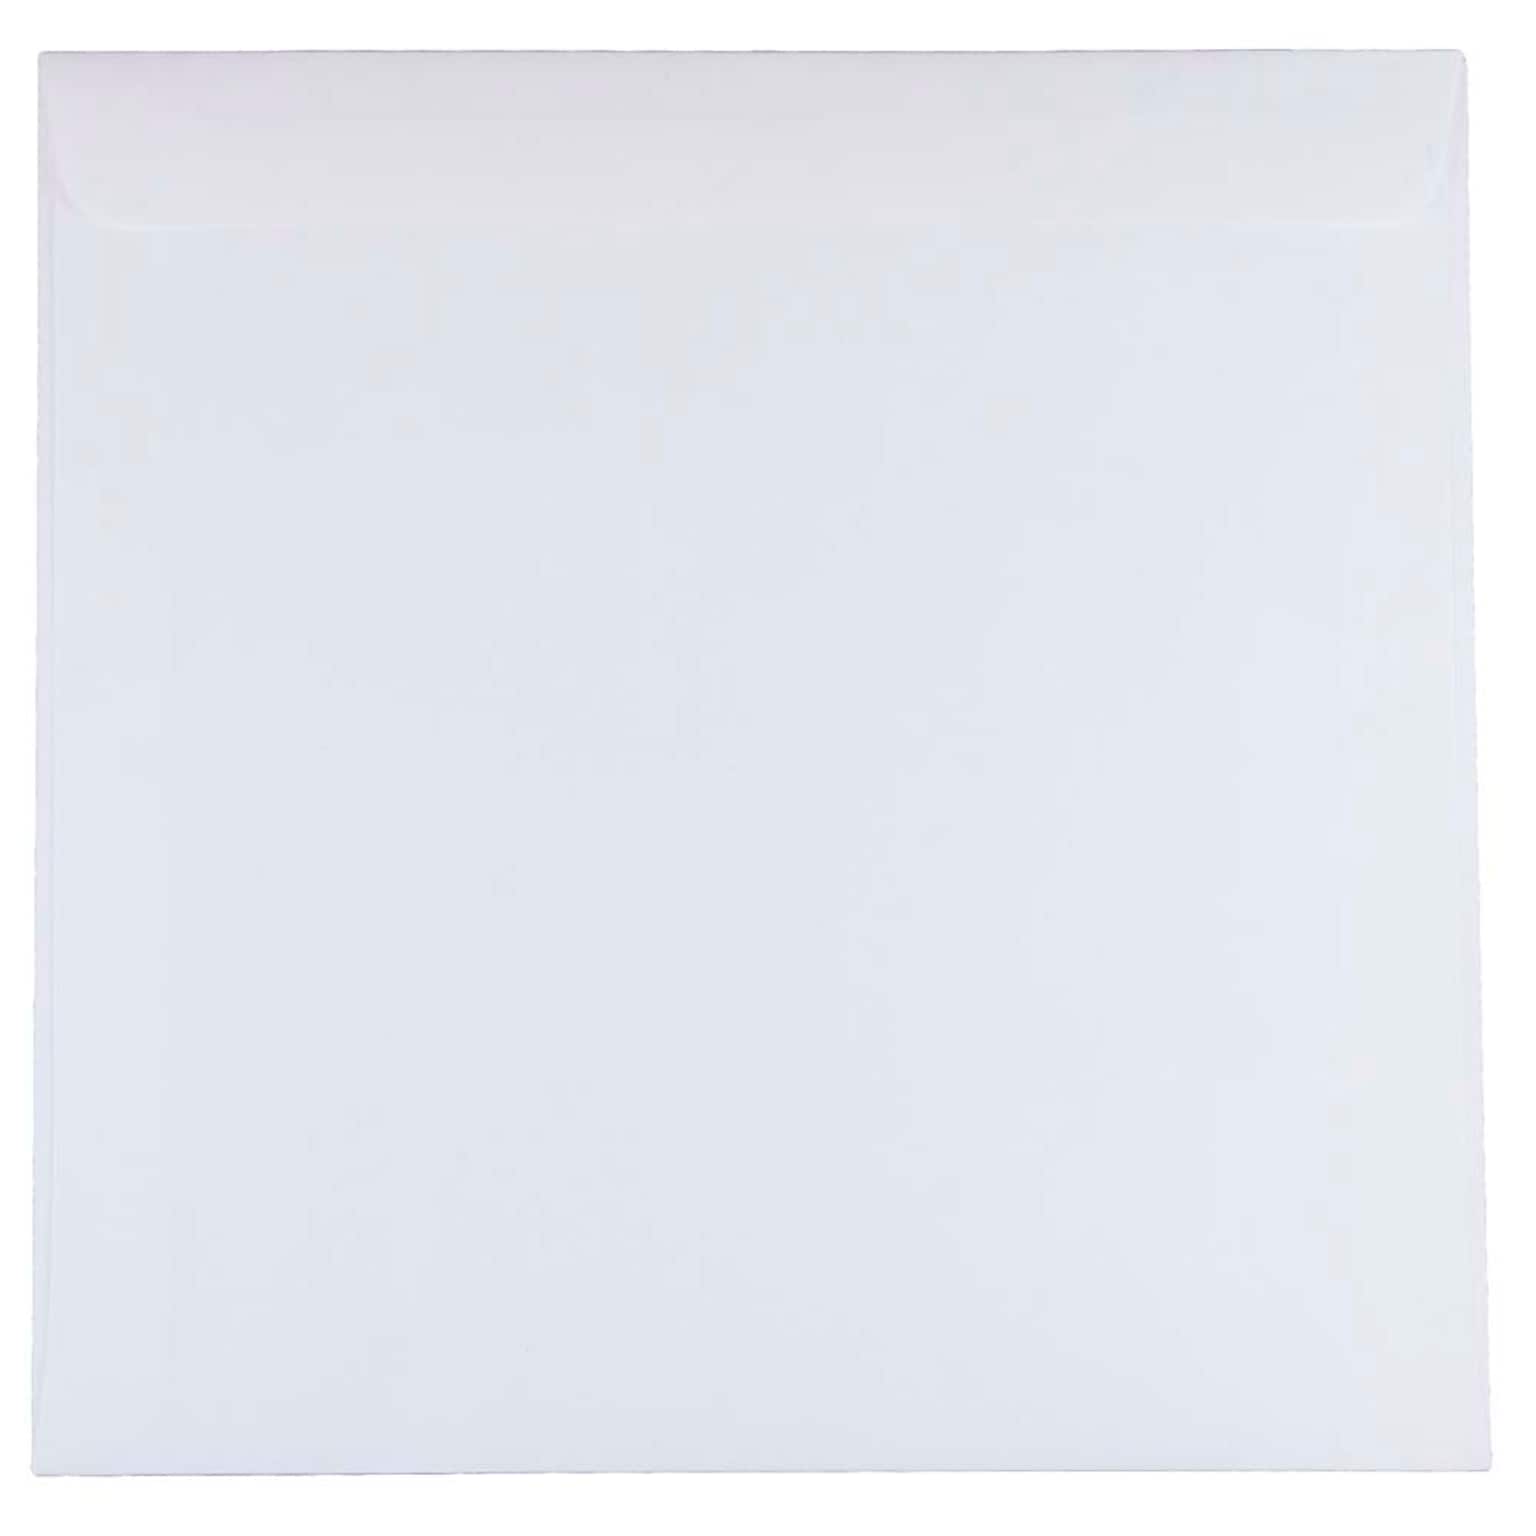 JAM Paper 9.5 x 9.5 Square Invitation Envelopes, White, 25/Pack (4233)